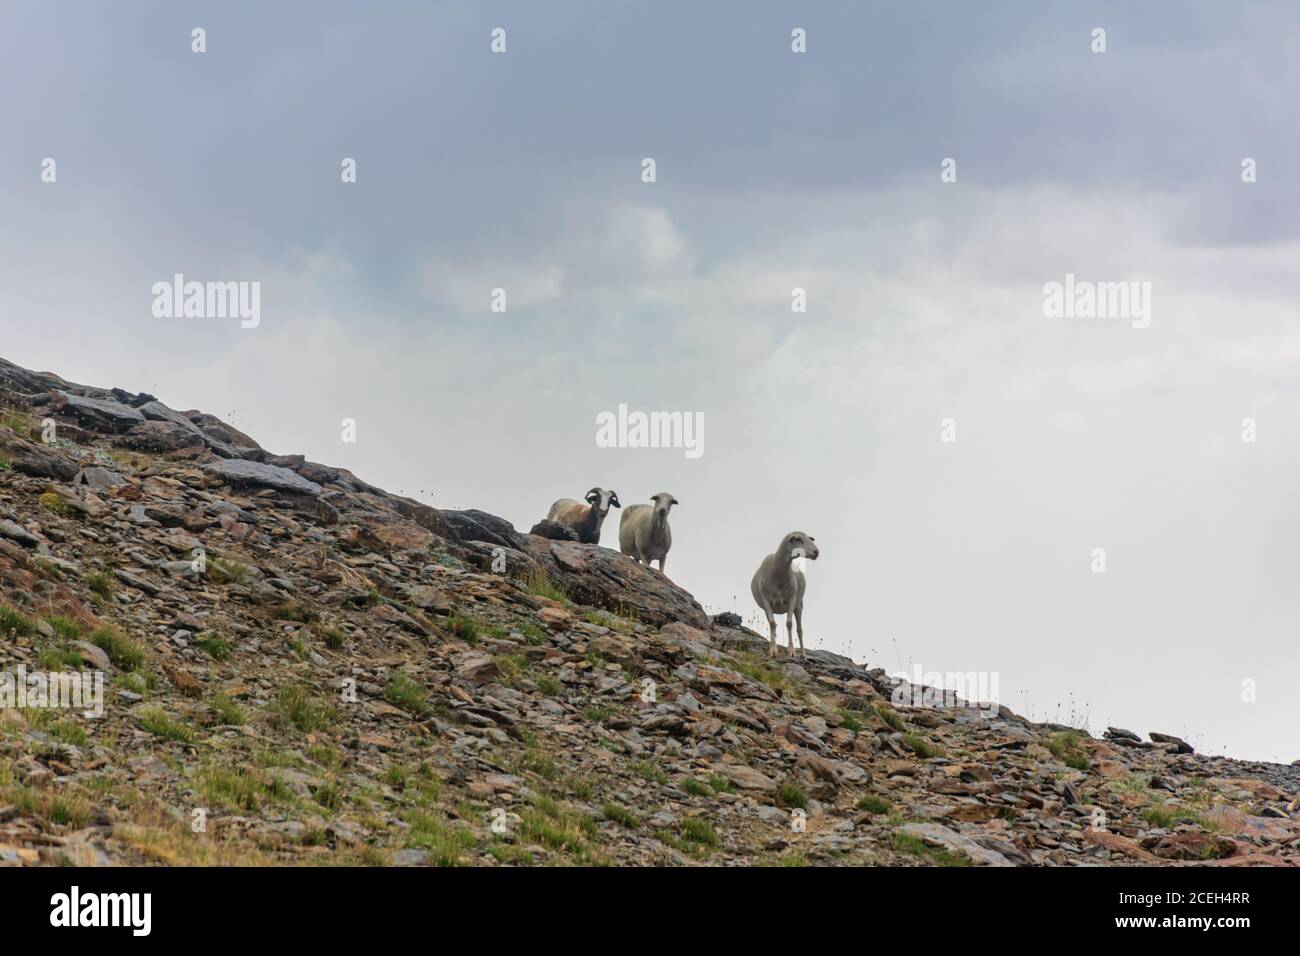 Trois moutons sur une pente dans le parc naturel de la Sierra Nevada, Grenade. Banque D'Images